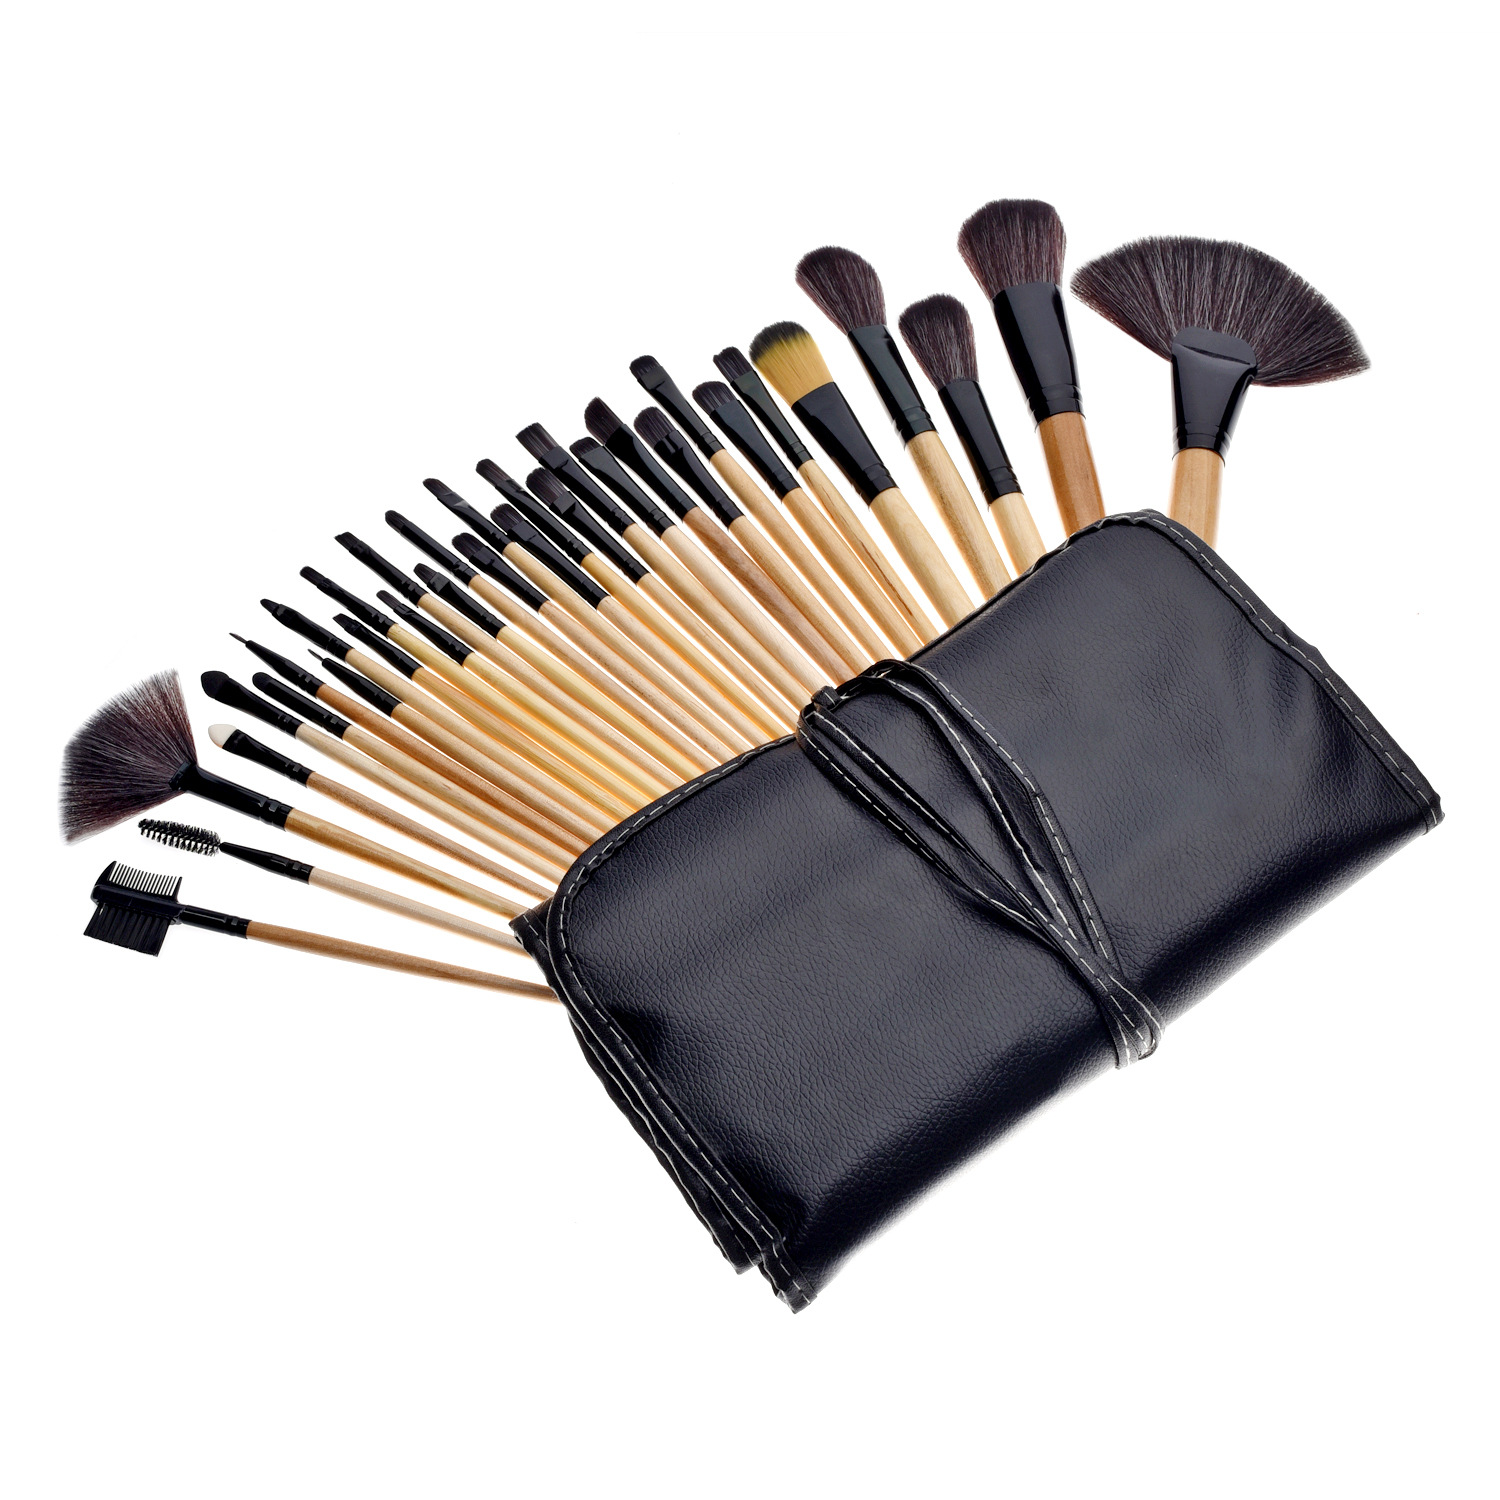 32pcs makeup brush set with bag